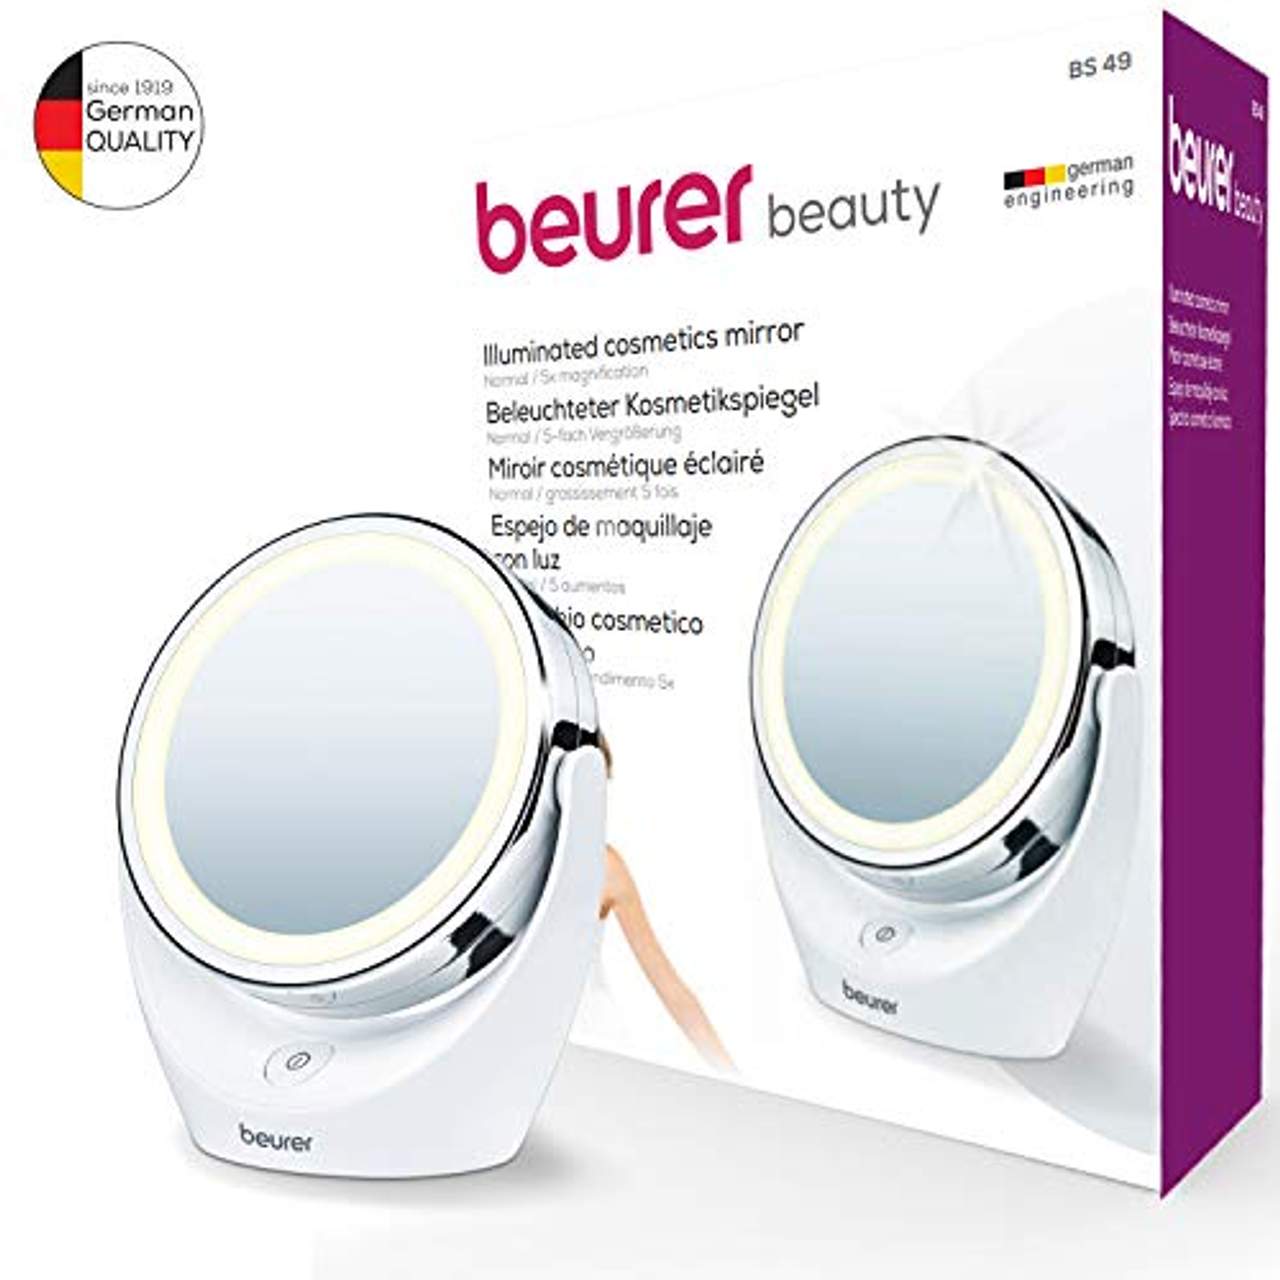 Beurer BS 49 Beleuchteter Kosmetikspiegel